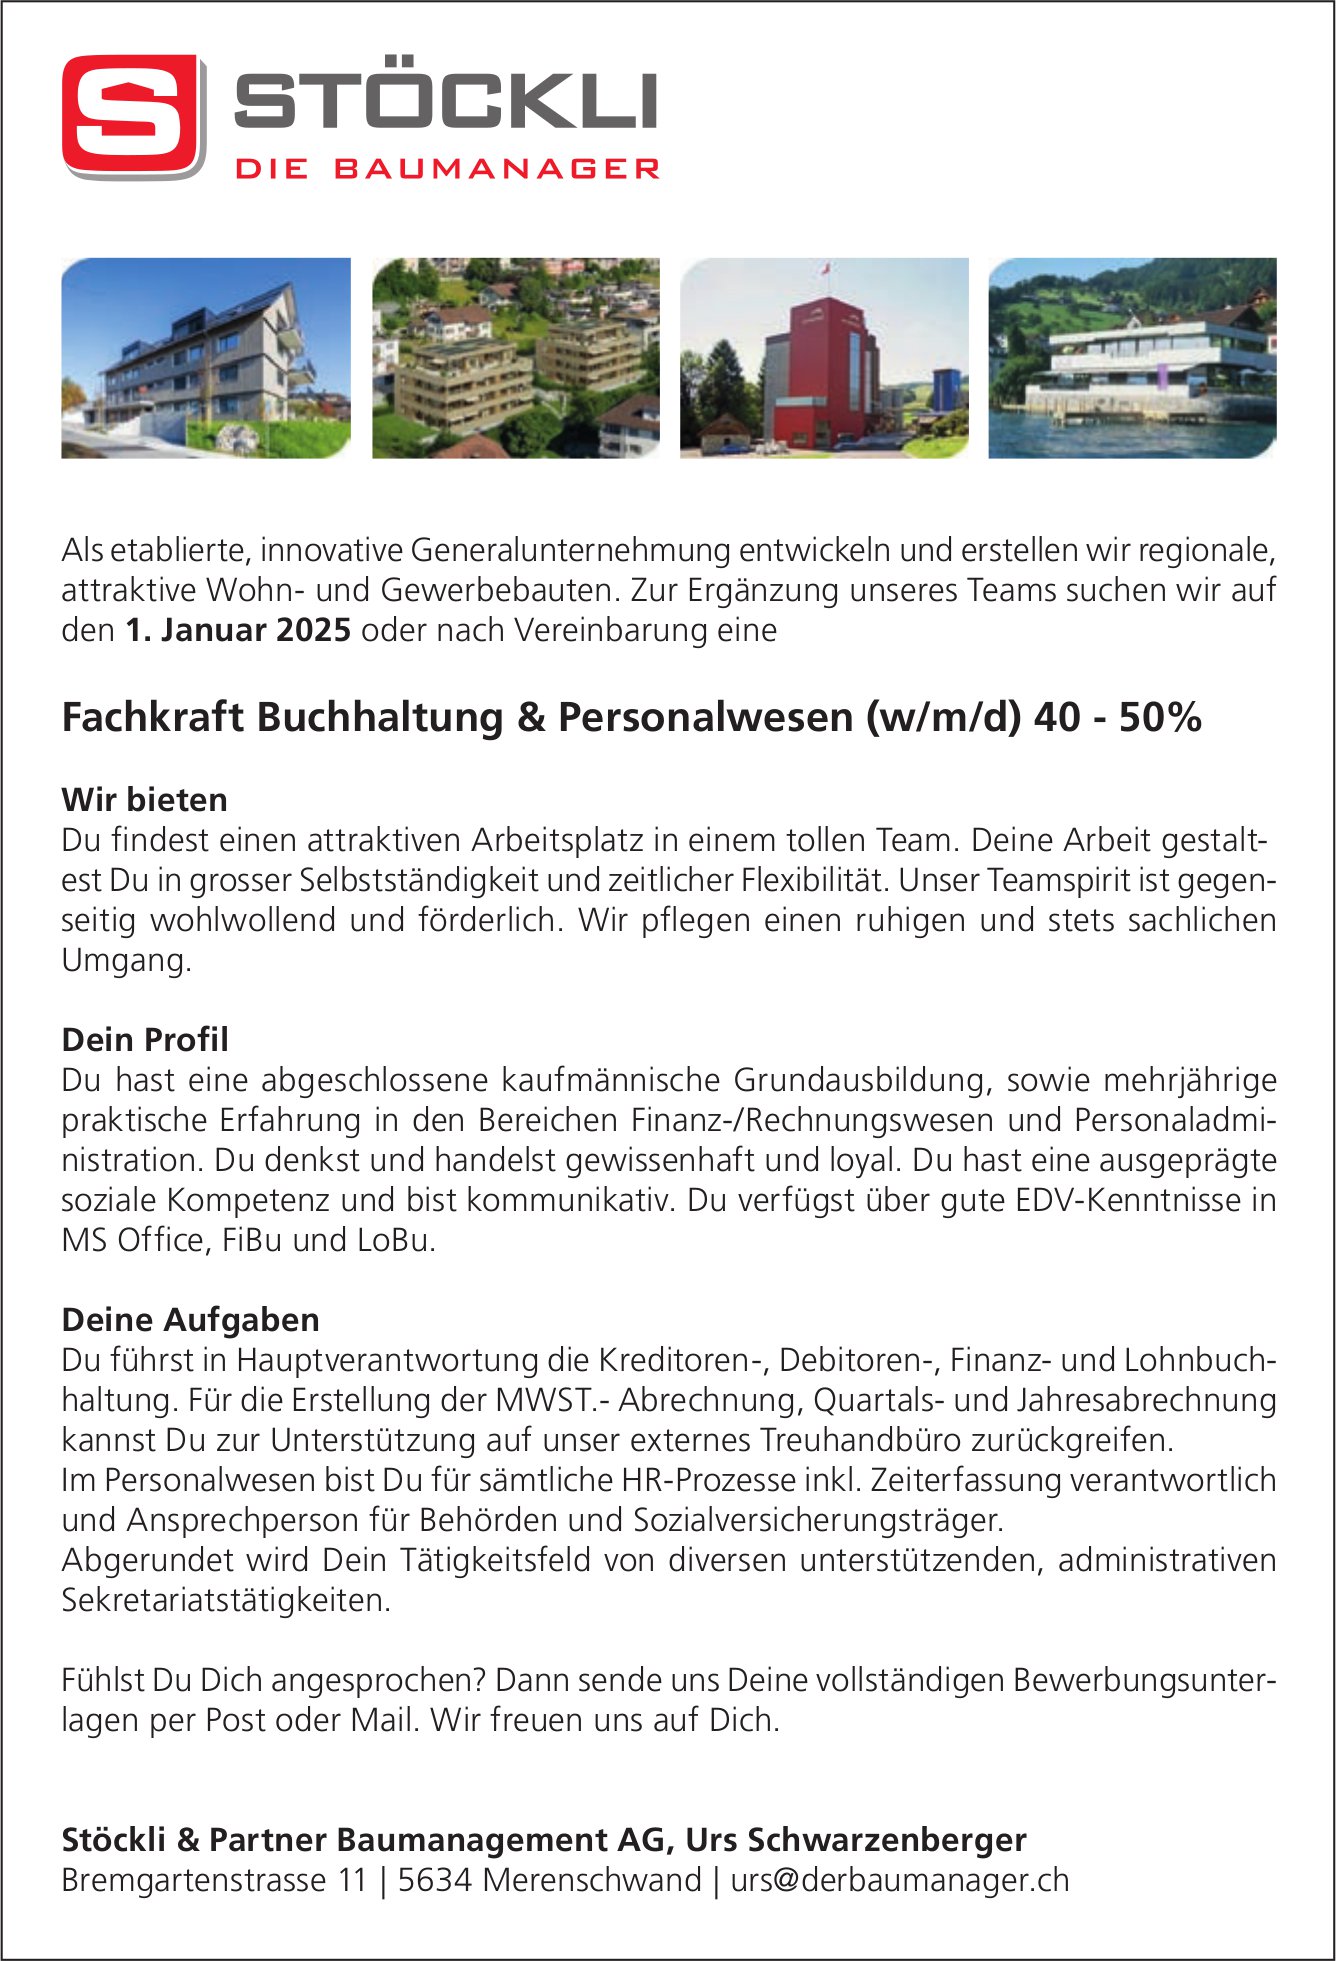 Fachkraft Buchhaltung & Personalwesen (w/m/d) 40-50%, Stöckli & Partner Baumanagement AG, Merenschwand, gesucht